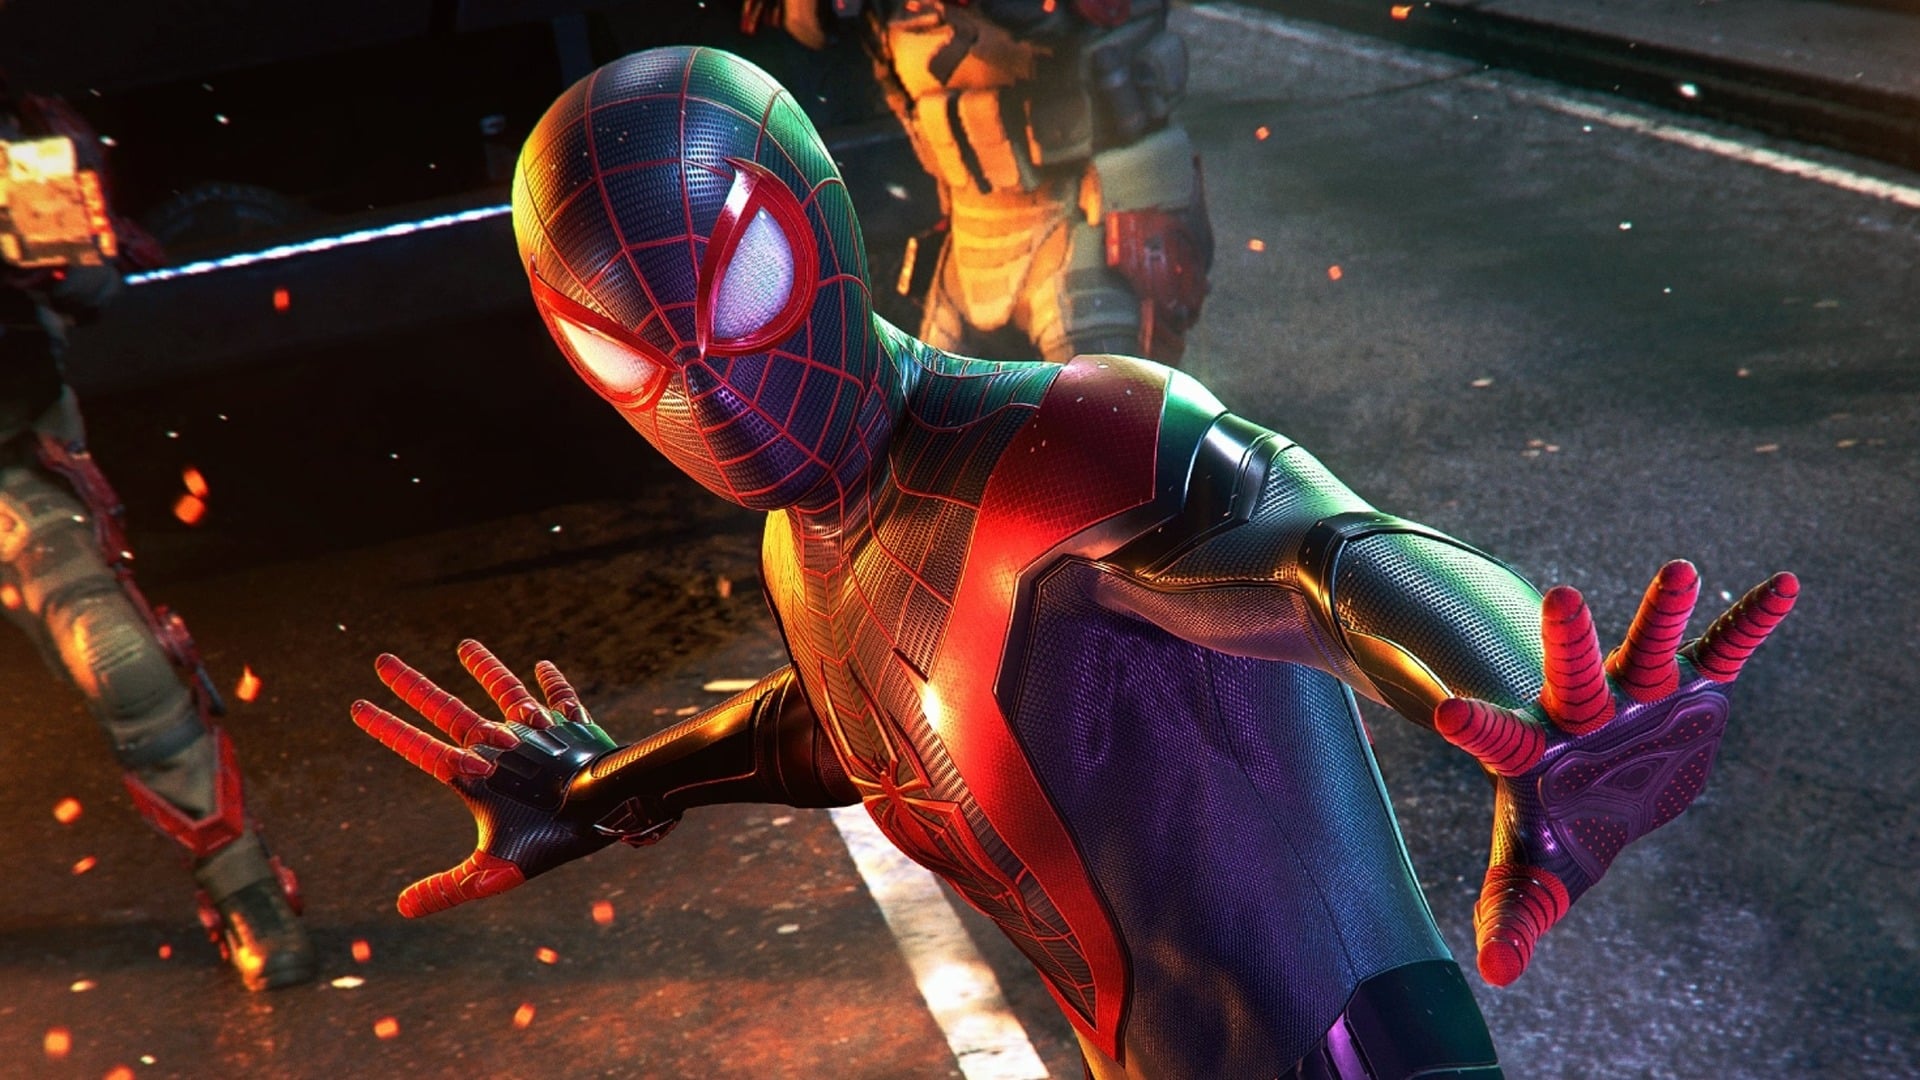 predobjednávkové bonusy hry Spider-Man